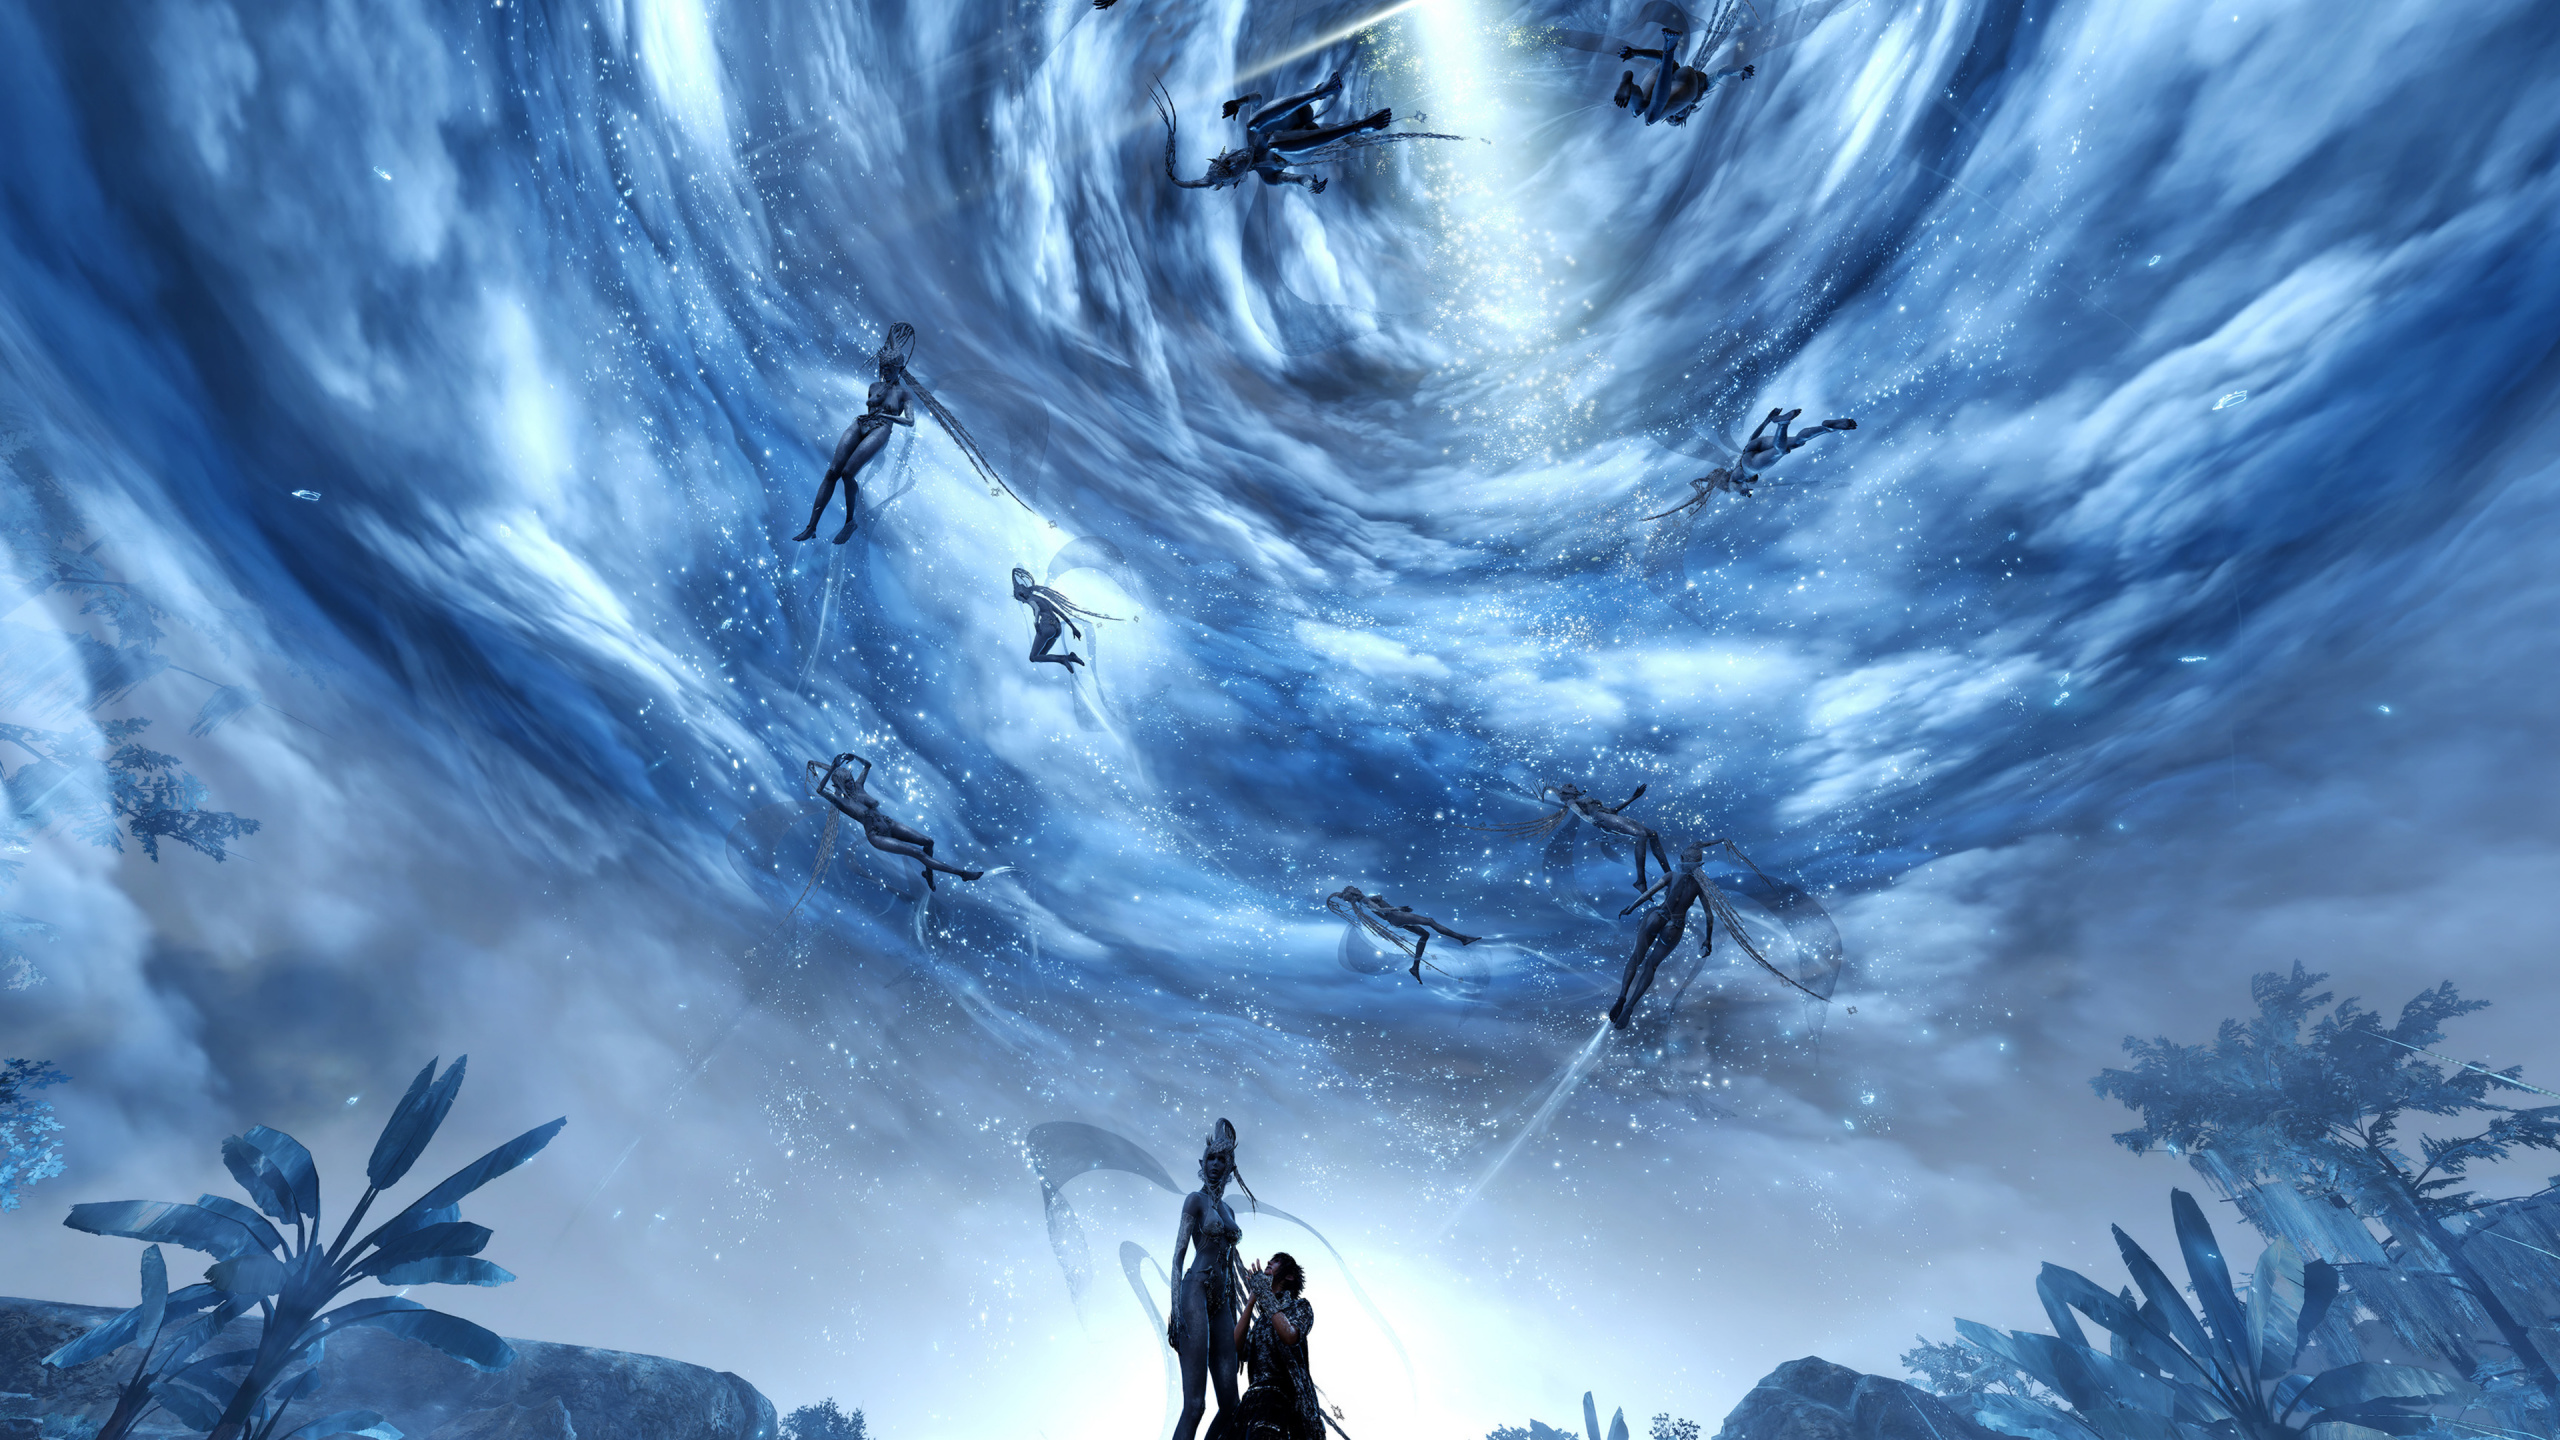 最终幻想xv, 最终幻想VII翻拍, 空间, 天空, 气氛 壁纸 2560x1440 允许